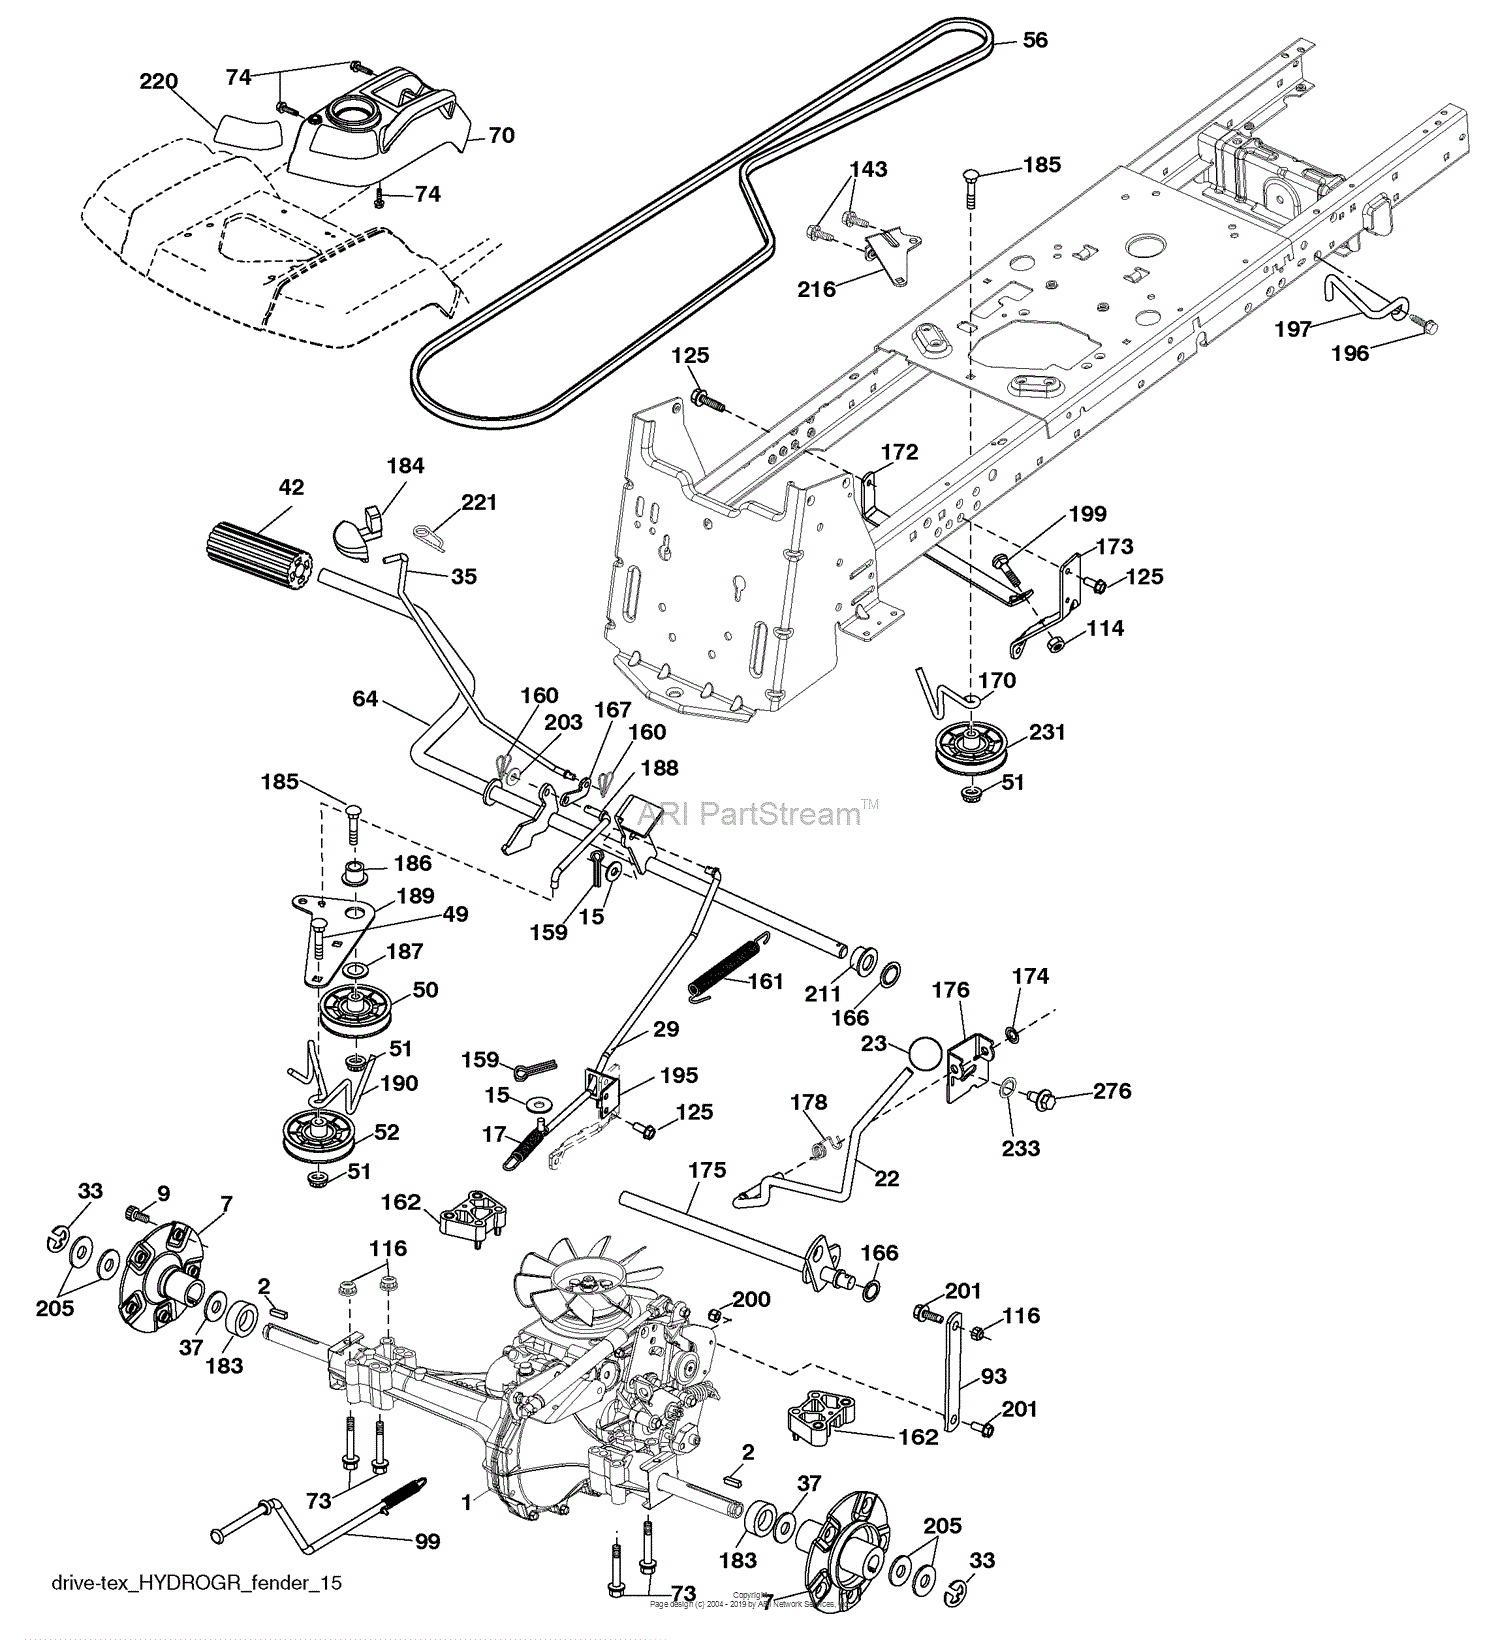 Husqvarna LGT 2554 (96045001501) (2009-05) Parts Diagram for Drive